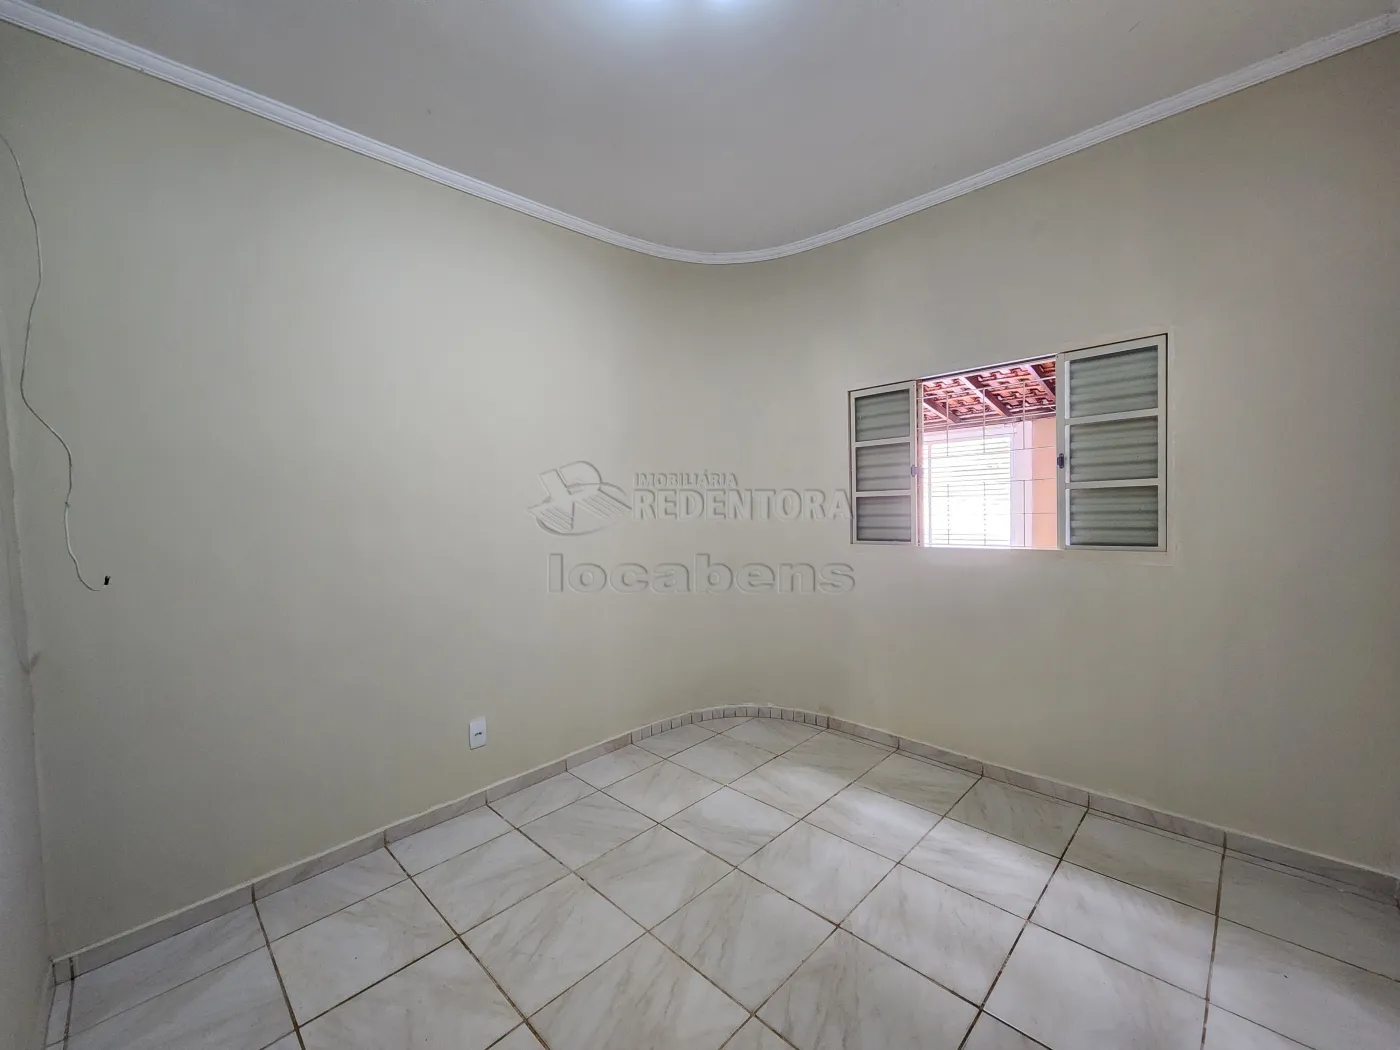 Alugar Casa / Padrão em São José do Rio Preto R$ 1.600,00 - Foto 7